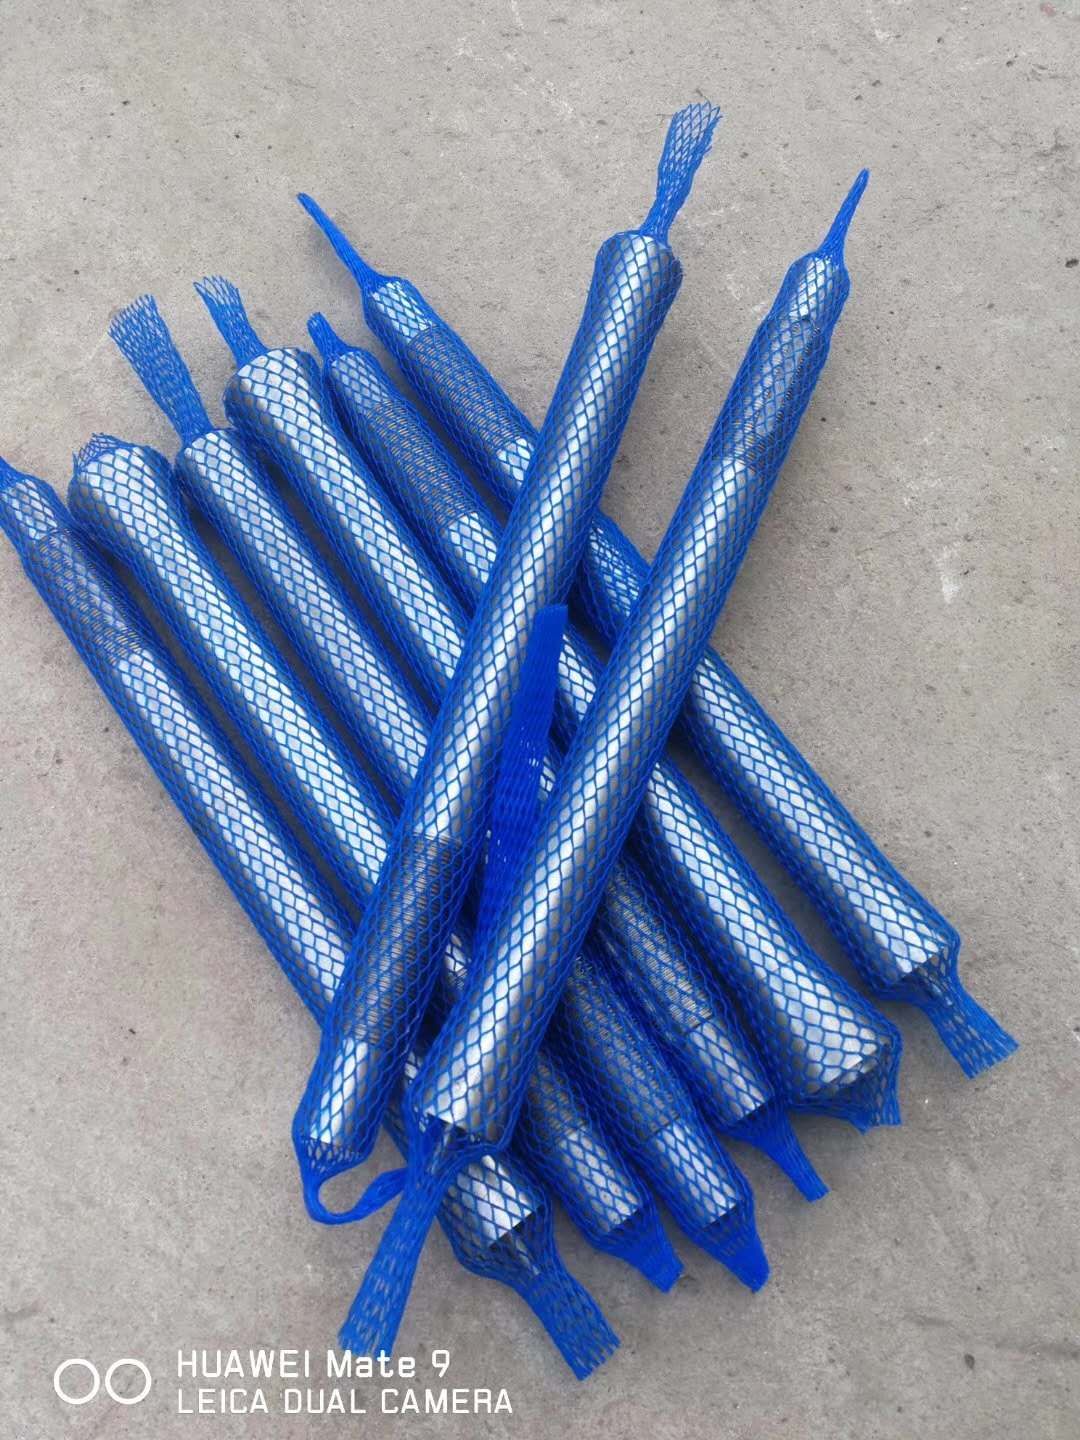 塑料网套 保护网套 工件网套 螺纹网套  塑料保护网套